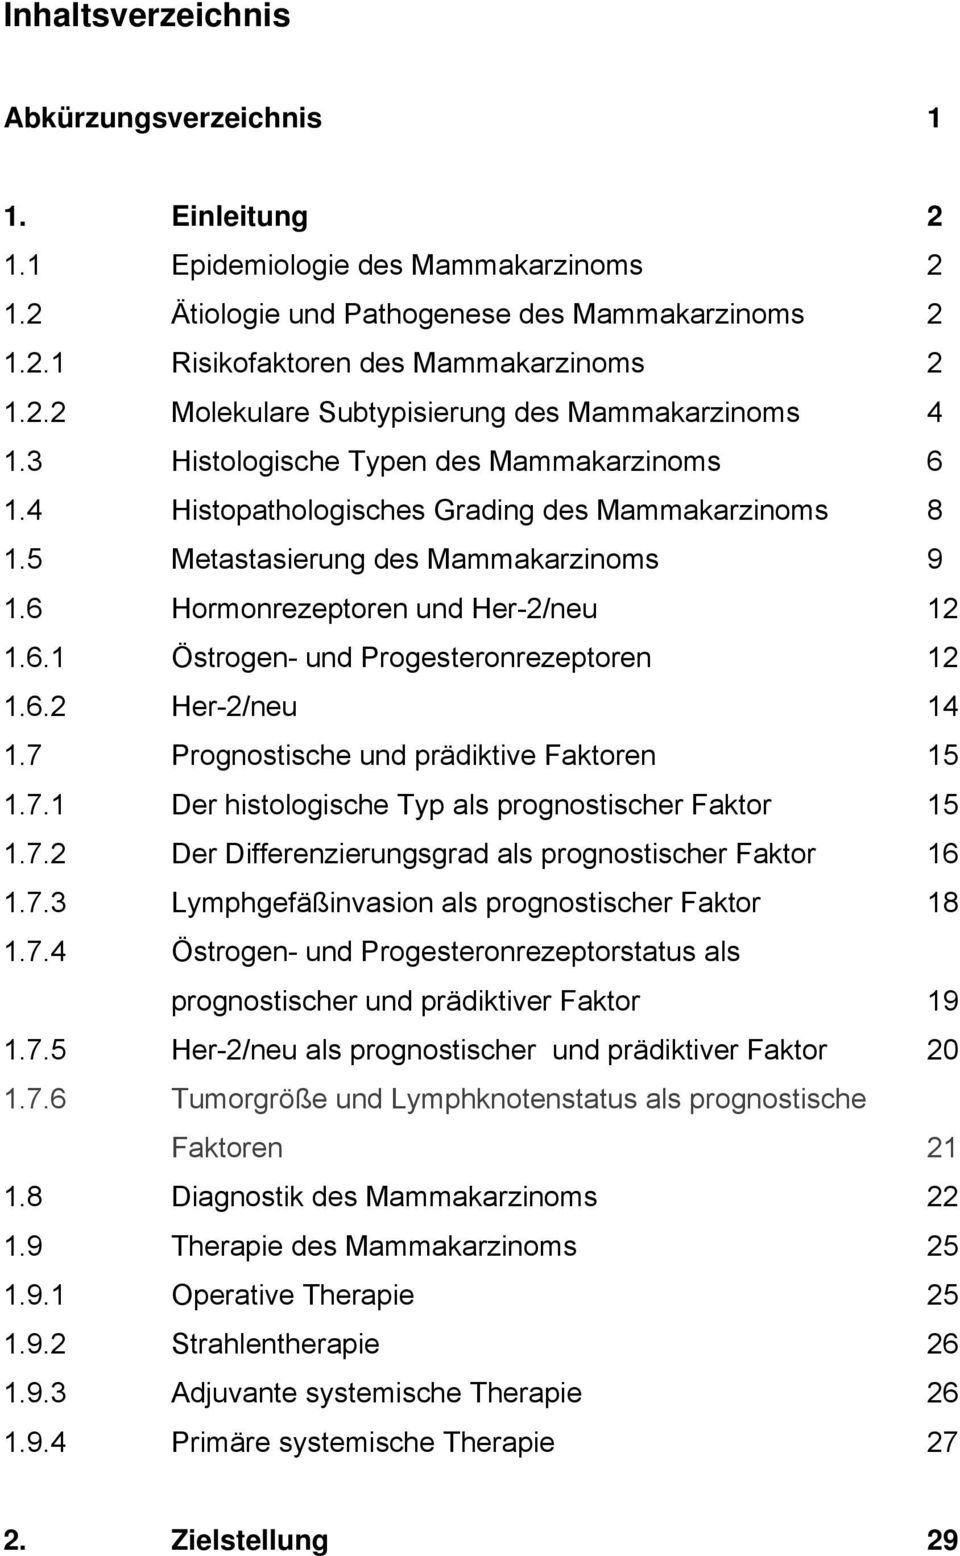 6.2 Her-2/neu 14 1.7 Prognostische und prädiktive Faktoren 15 1.7.1 Der histologische Typ als prognostischer Faktor 15 1.7.2 Der Differenzierungsgrad als prognostischer Faktor 16 1.7.3 Lymphgefäßinvasion als prognostischer Faktor 18 1.